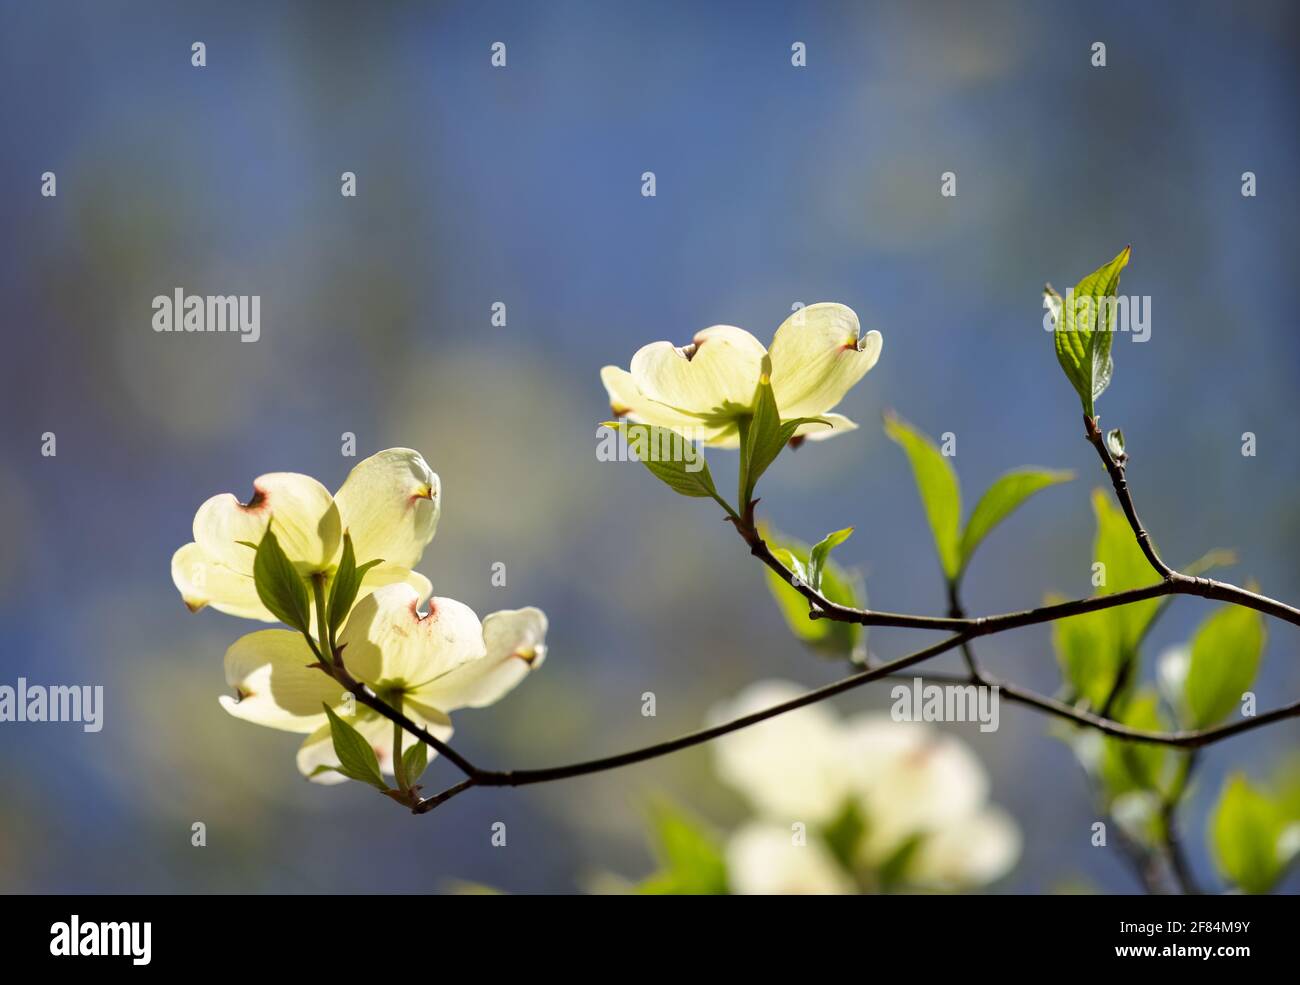 Blühendes Hundehuh (Cornus florida) - Hall County, Georgia. Sonnenlicht scheint an einem sonnigen Frühlingstag durch die Blüten eines blühenden Dogwood-Baumes. Stockfoto